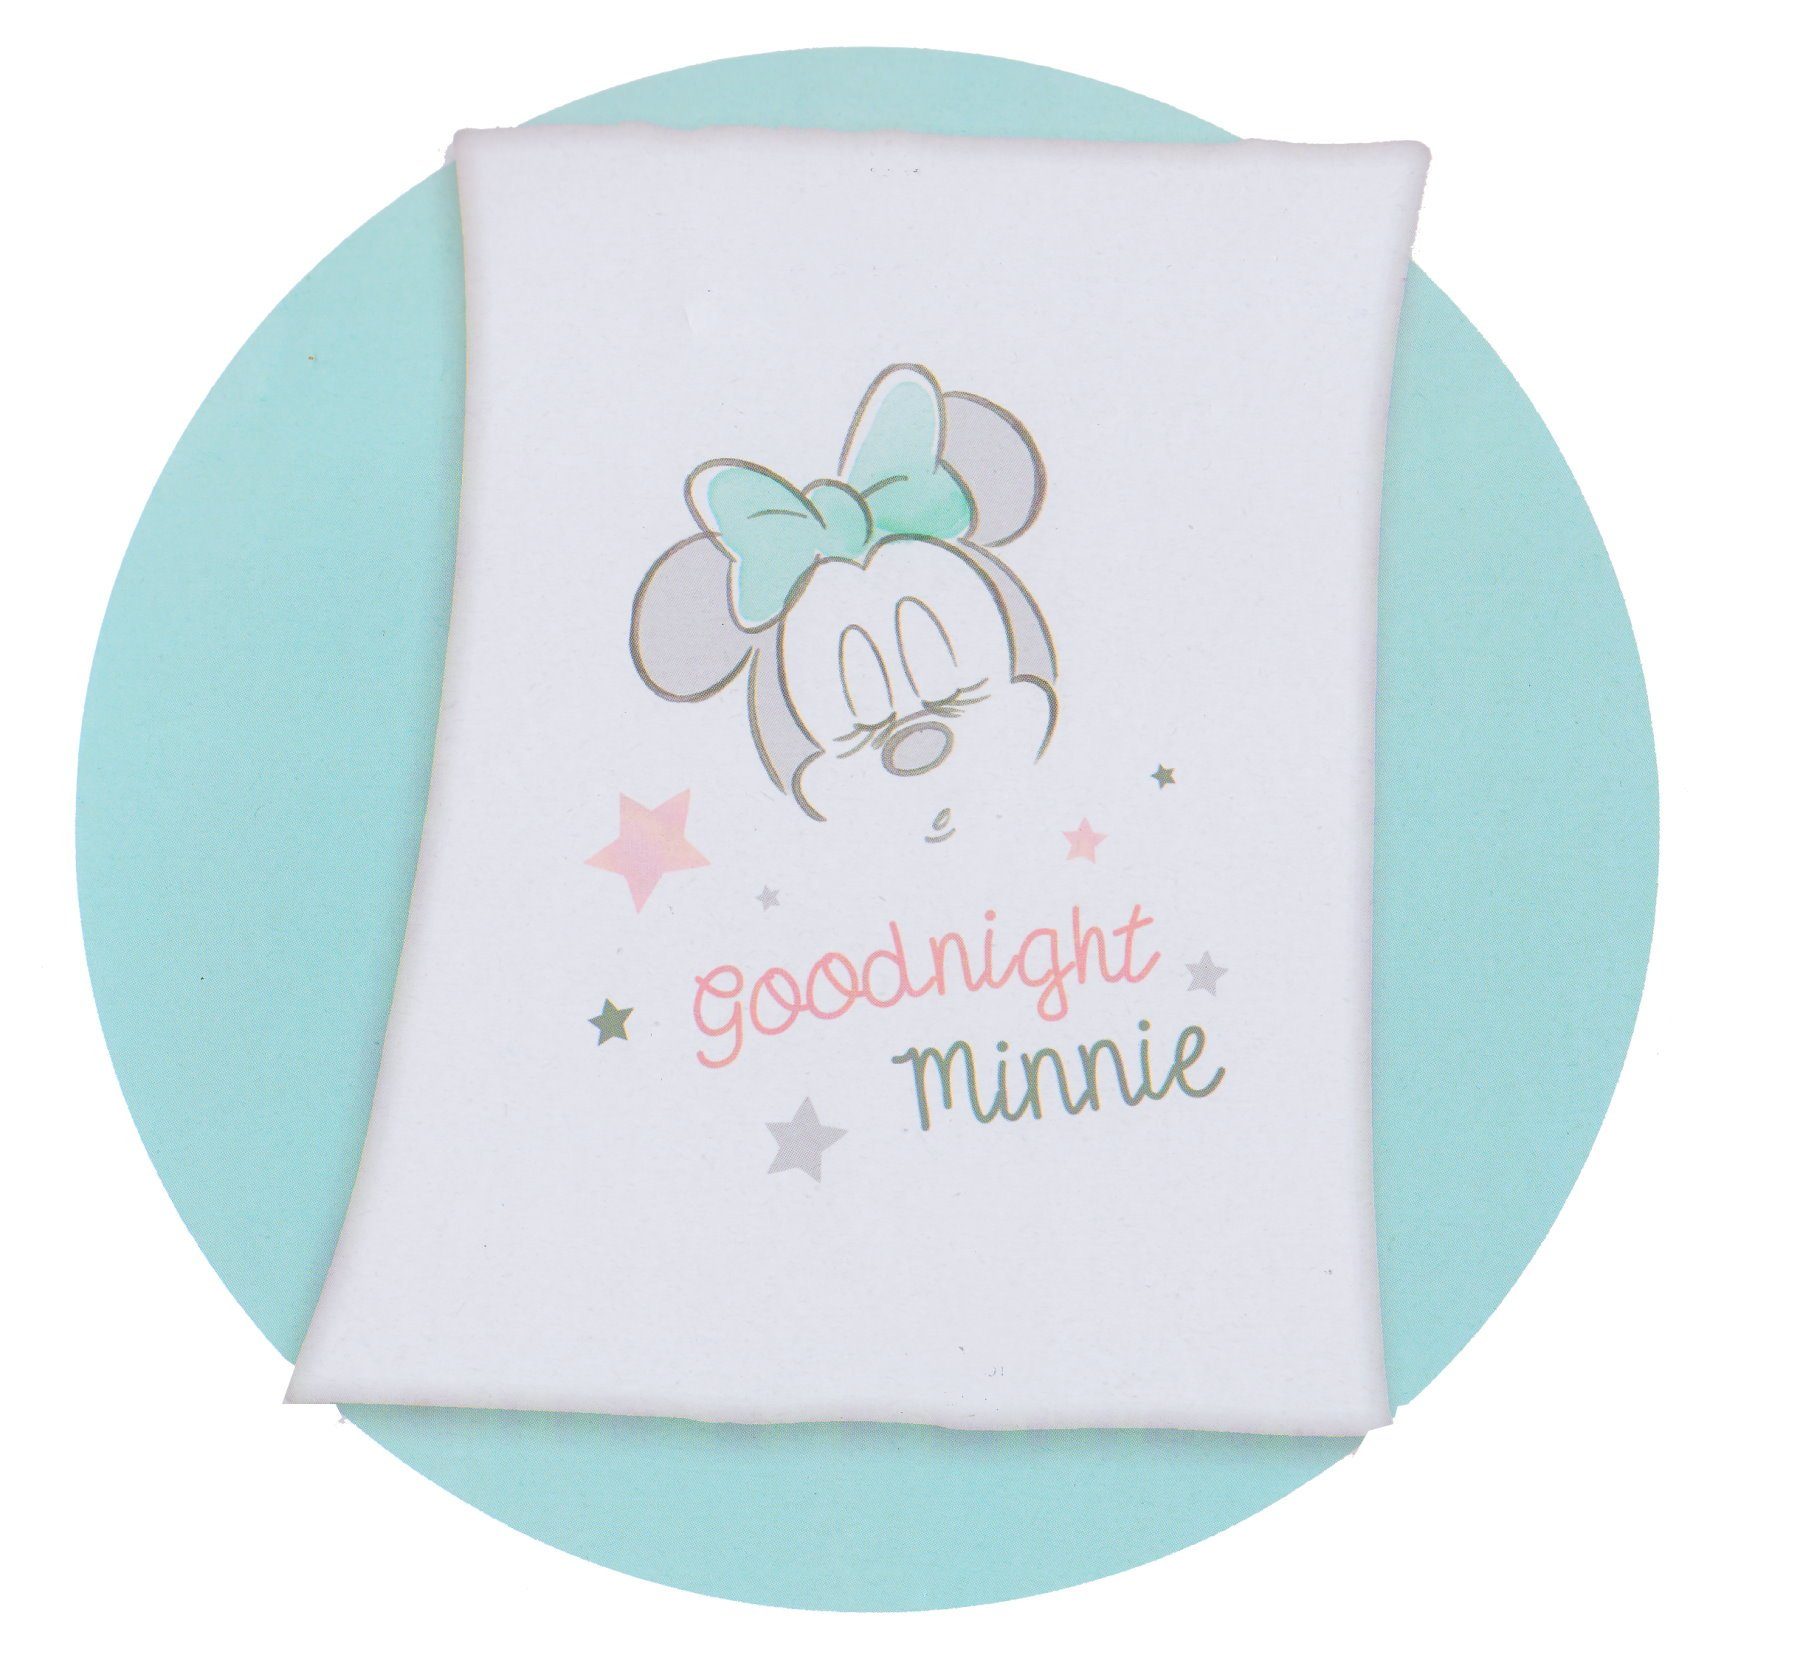 Krabbeldecke, Disney Baby, Disney Babydecke Minnie Mouse Flauschdecke  Kuscheldecke Krabbel Decke Tagesdecke online kaufen | OTTO